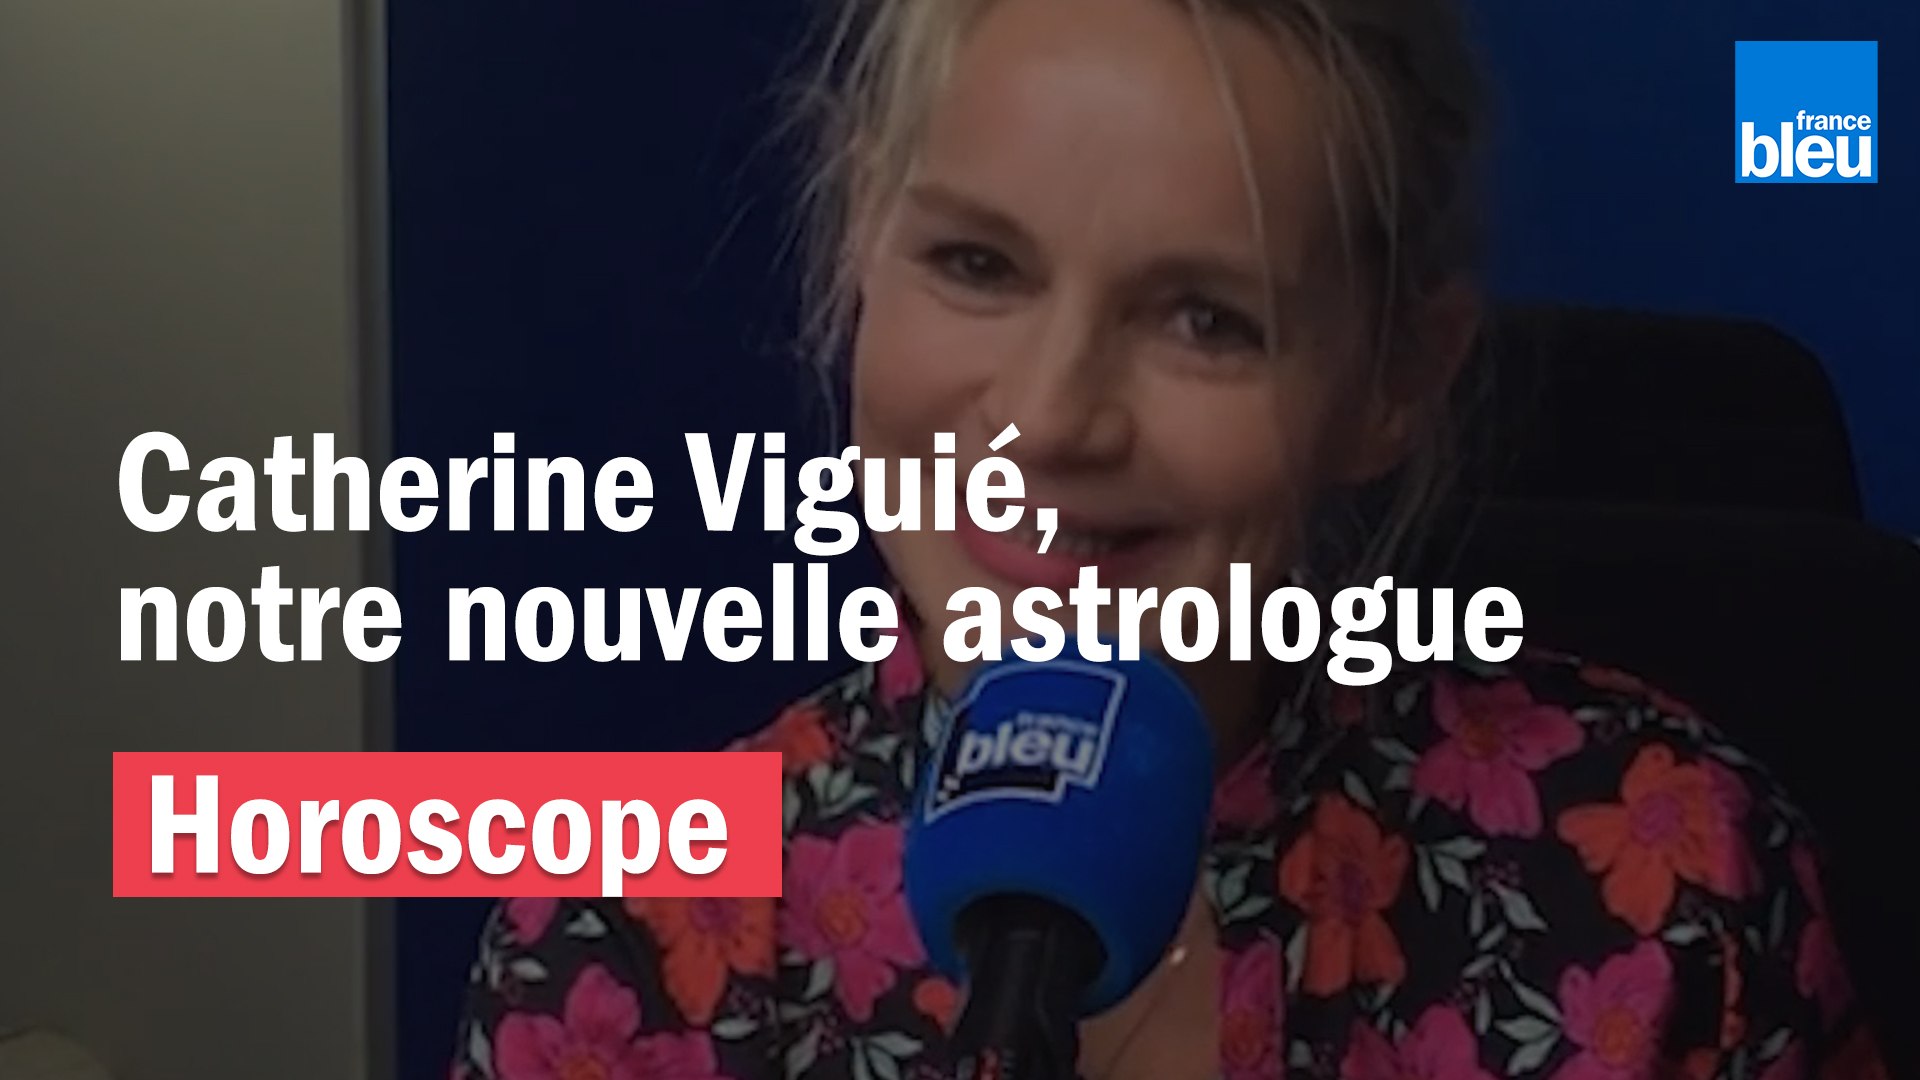 Catherine Viguié, la nouvelle astrologue de France Bleu - Vidéo Dailymotion